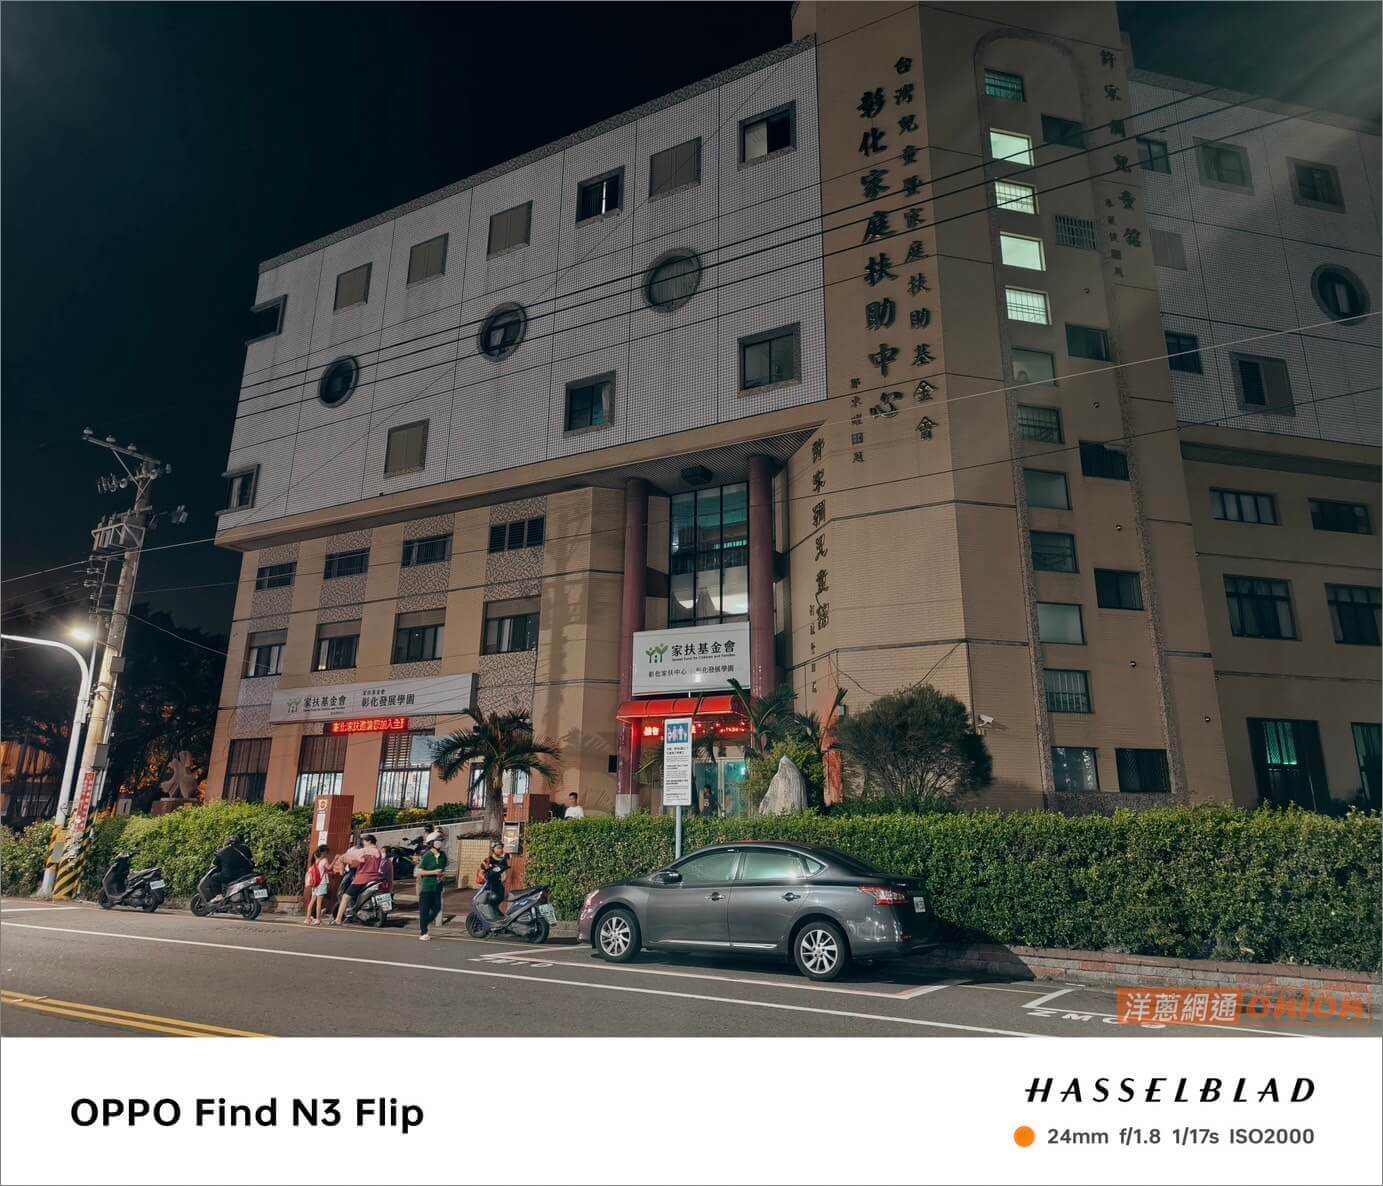 使用 OPPO Find N3 Flip 5000 萬畫素主鏡頭拍攝之夜景照